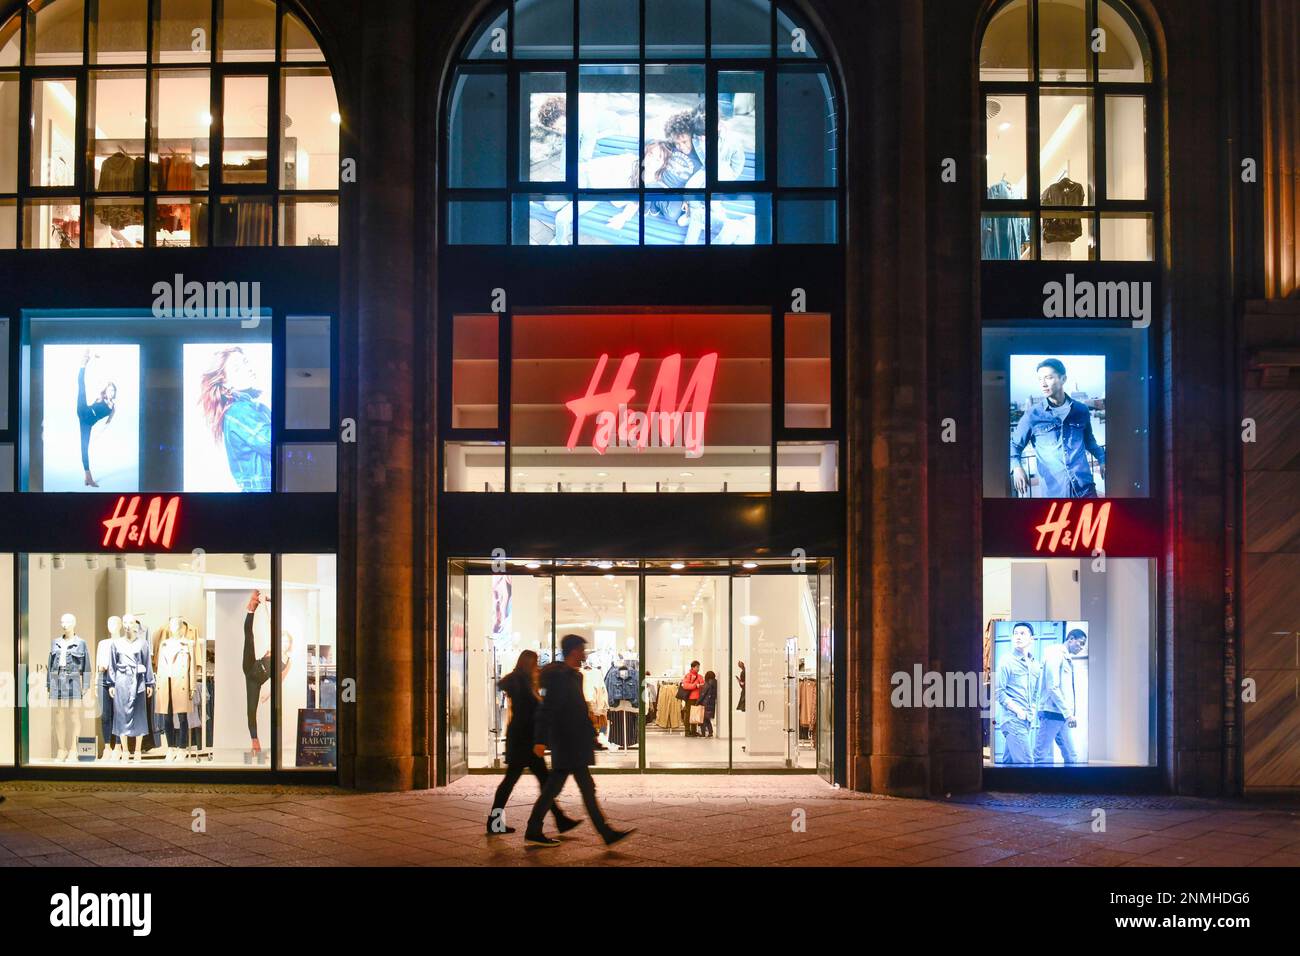 H&M, Kurfuerstendamm, Charlottenburg, Berlin, Germany Stock Photo - Alamy